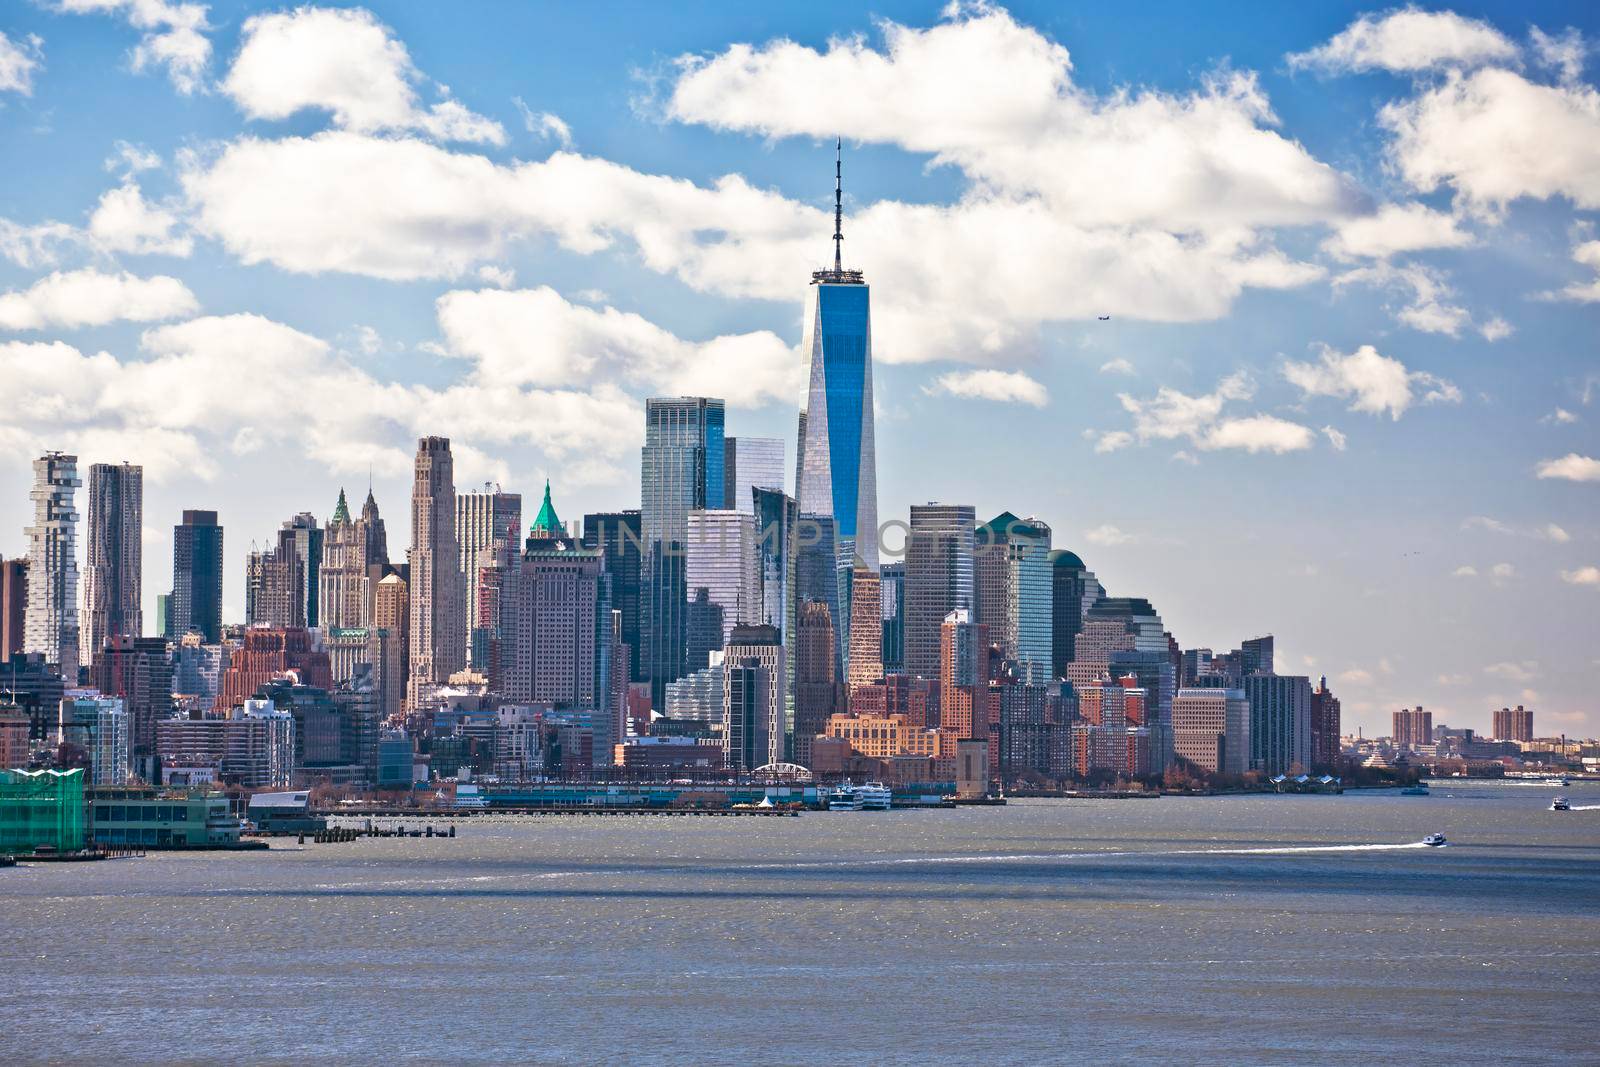 New York City epic downtown skyline view by xbrchx